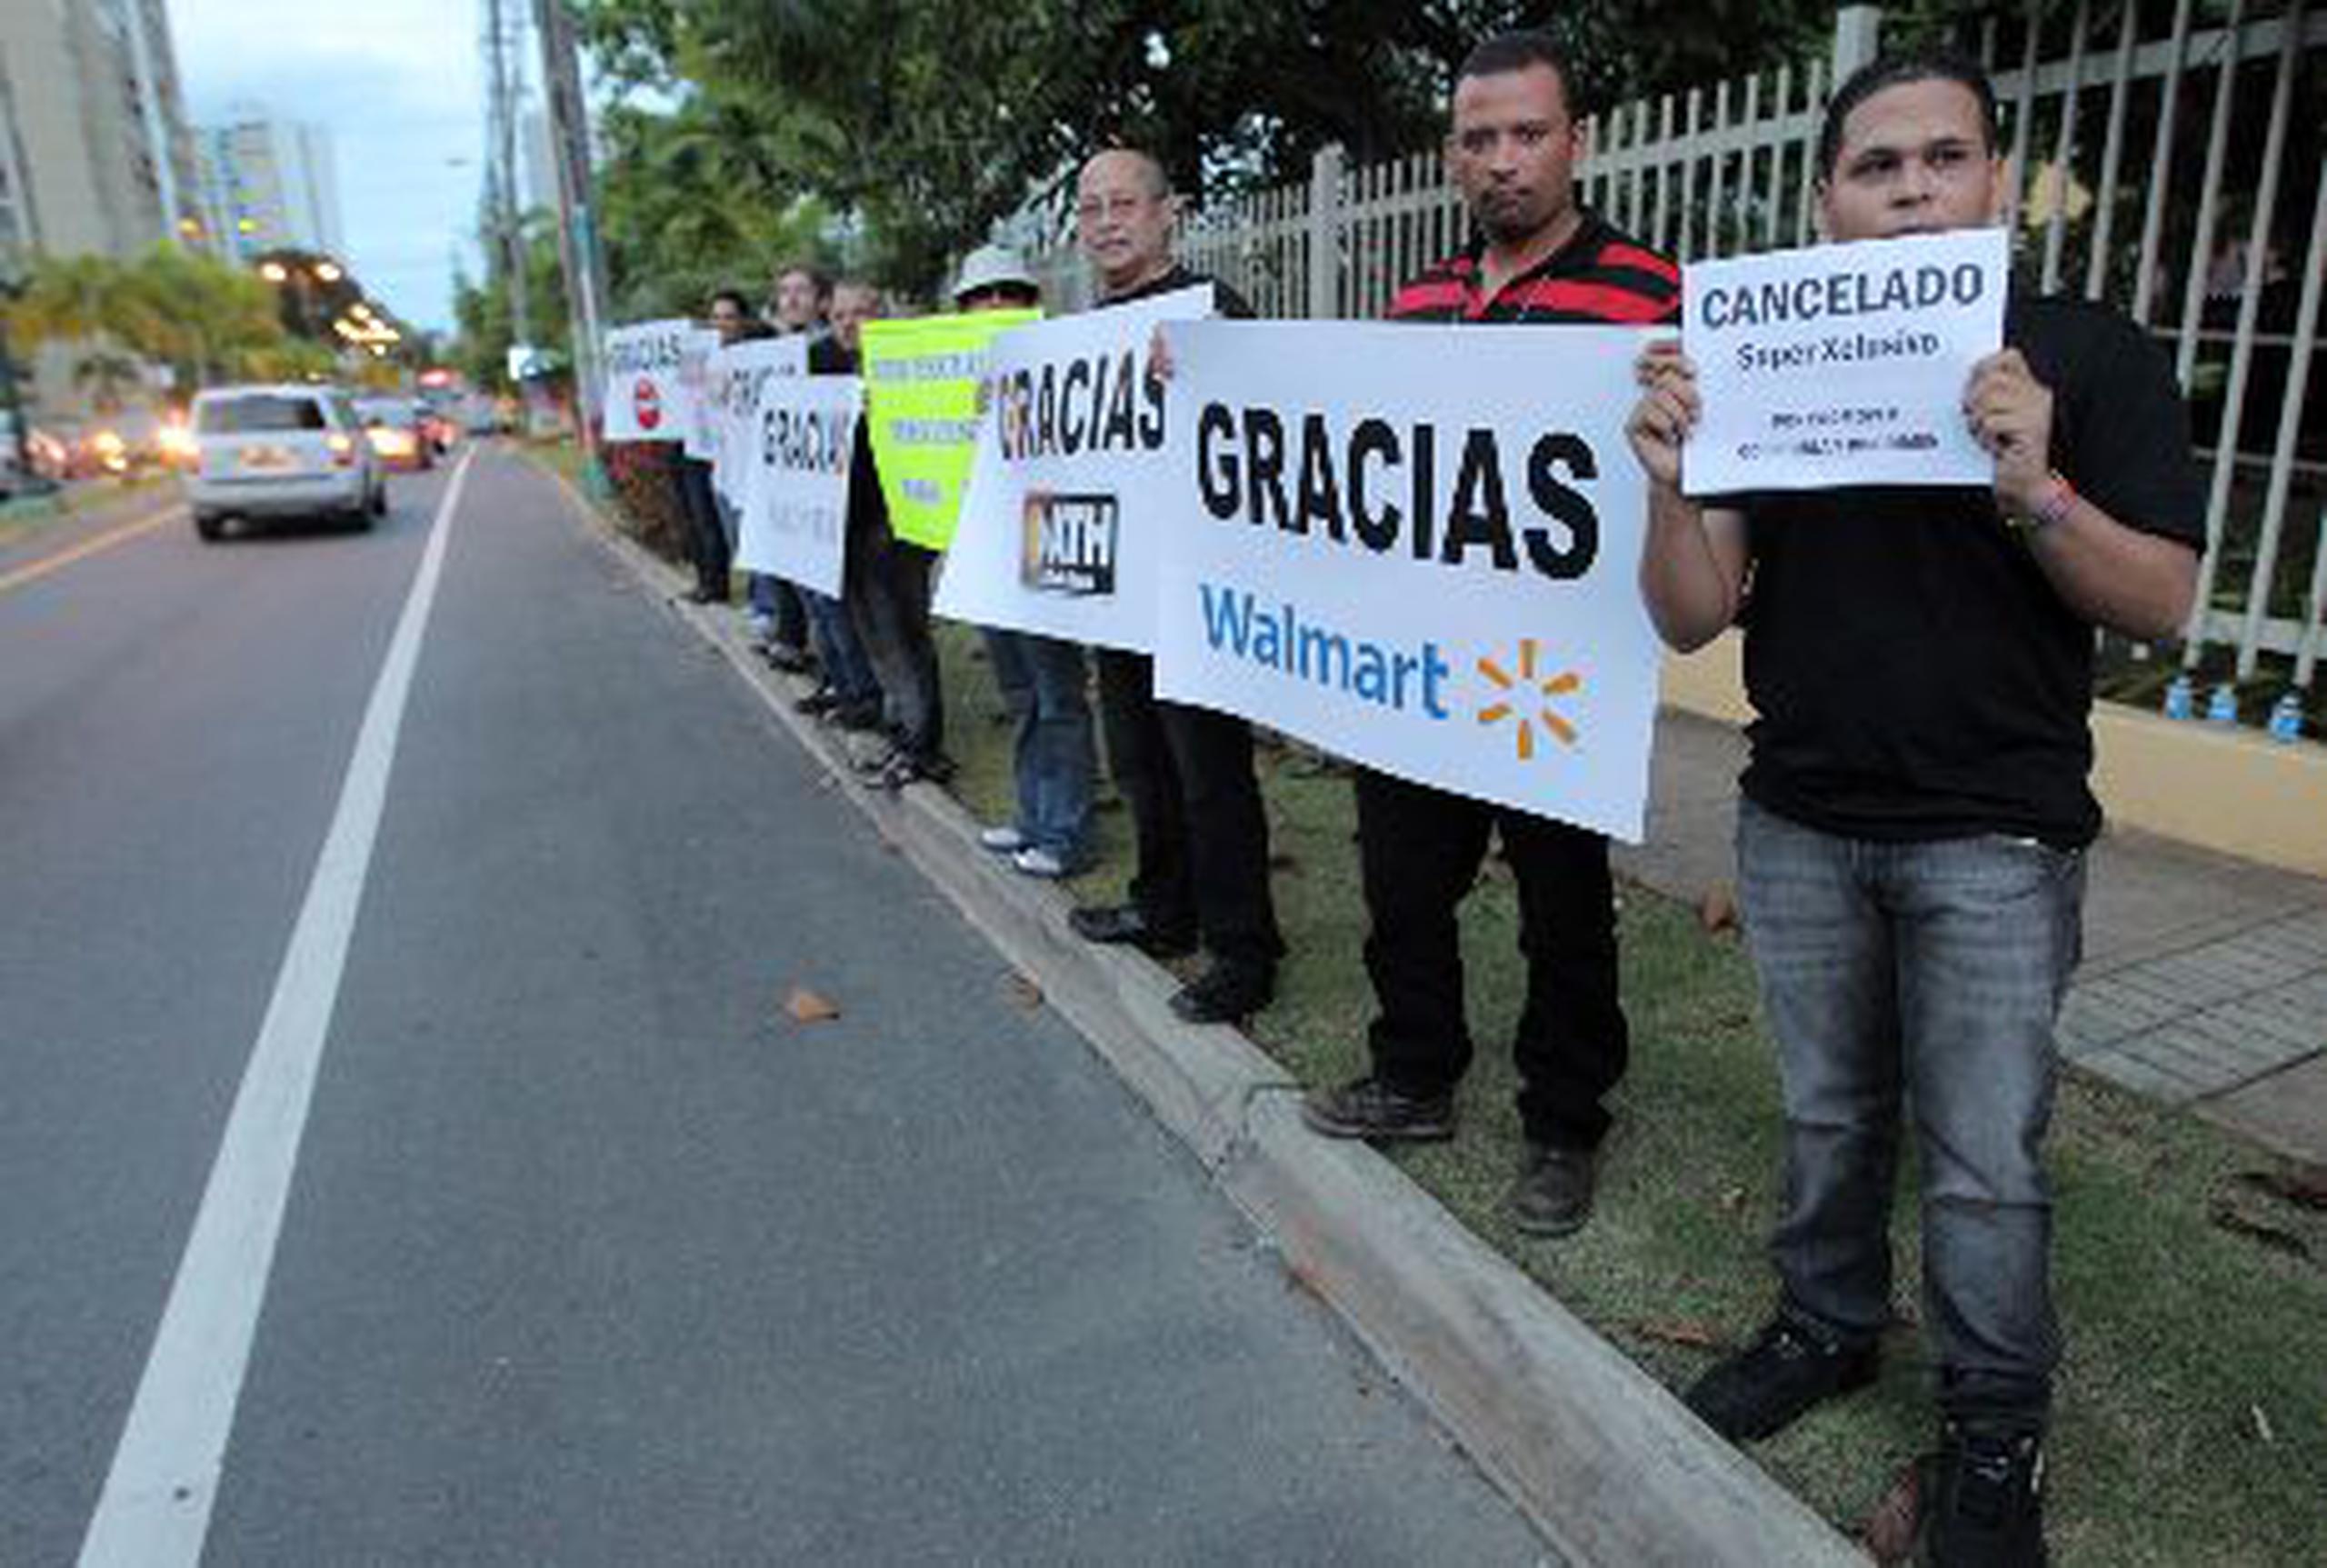 Decenas de manifestantes exigieron ayer frente a Wapa, en Guaynabo, la cancelación del programa SuperXclusivo y agradecieron a las firmas que les retiraron su auspicio.&nbsp;<font color="yellow">(juan.martinez@gfrmedia.com)</font>